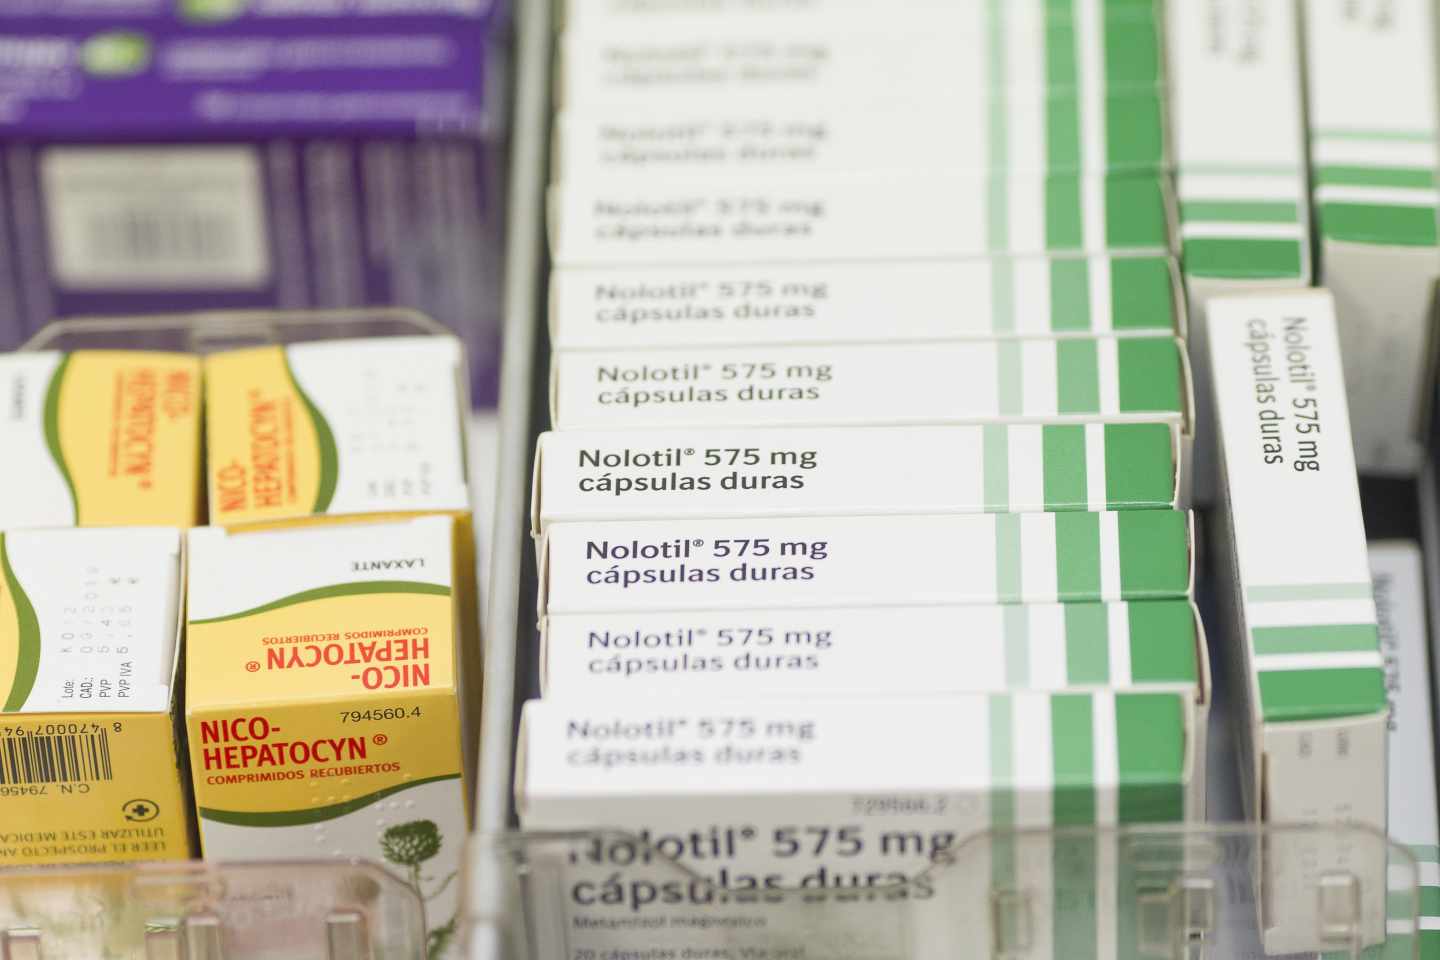 Cajas de Nolotil, medicamento prohibido en algunos países pero muy usado en España.